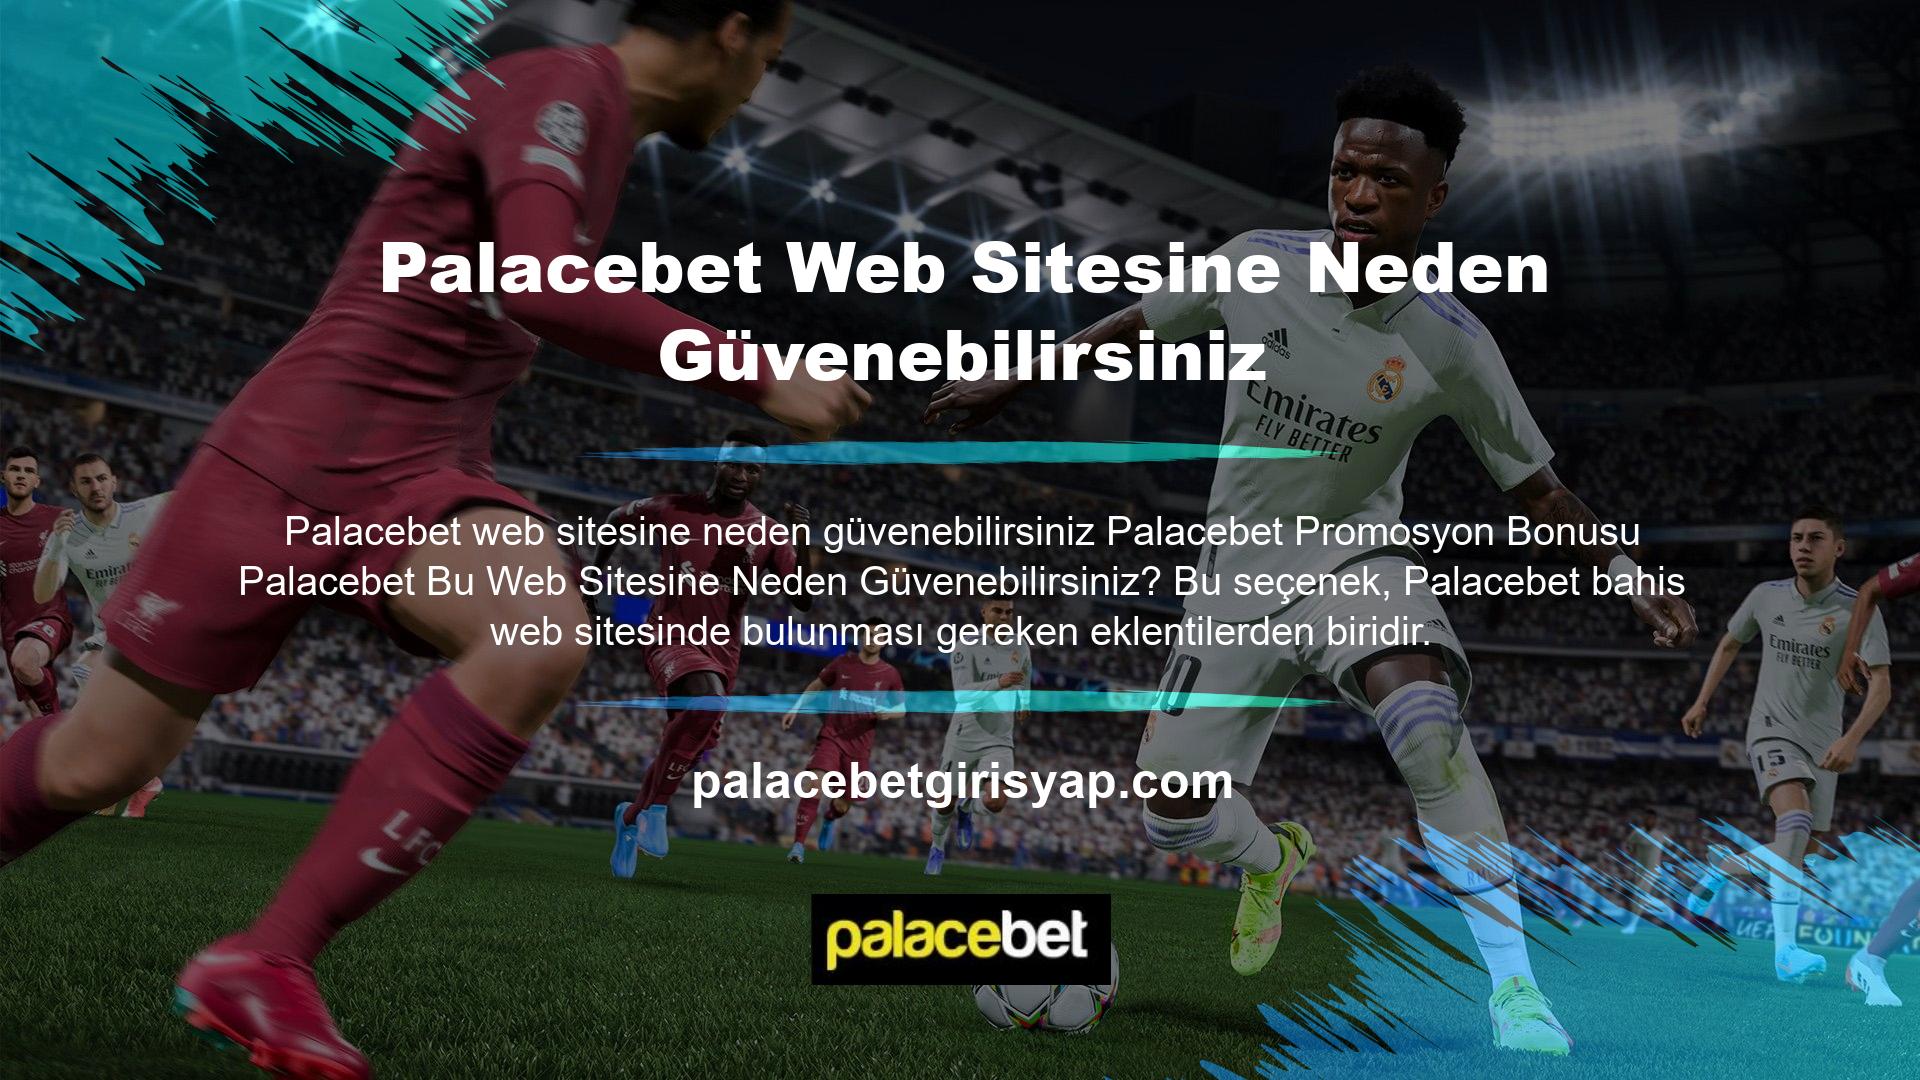 Palacebet promosyonları sitenin ana ekranında oyunculara sunulmaktadır